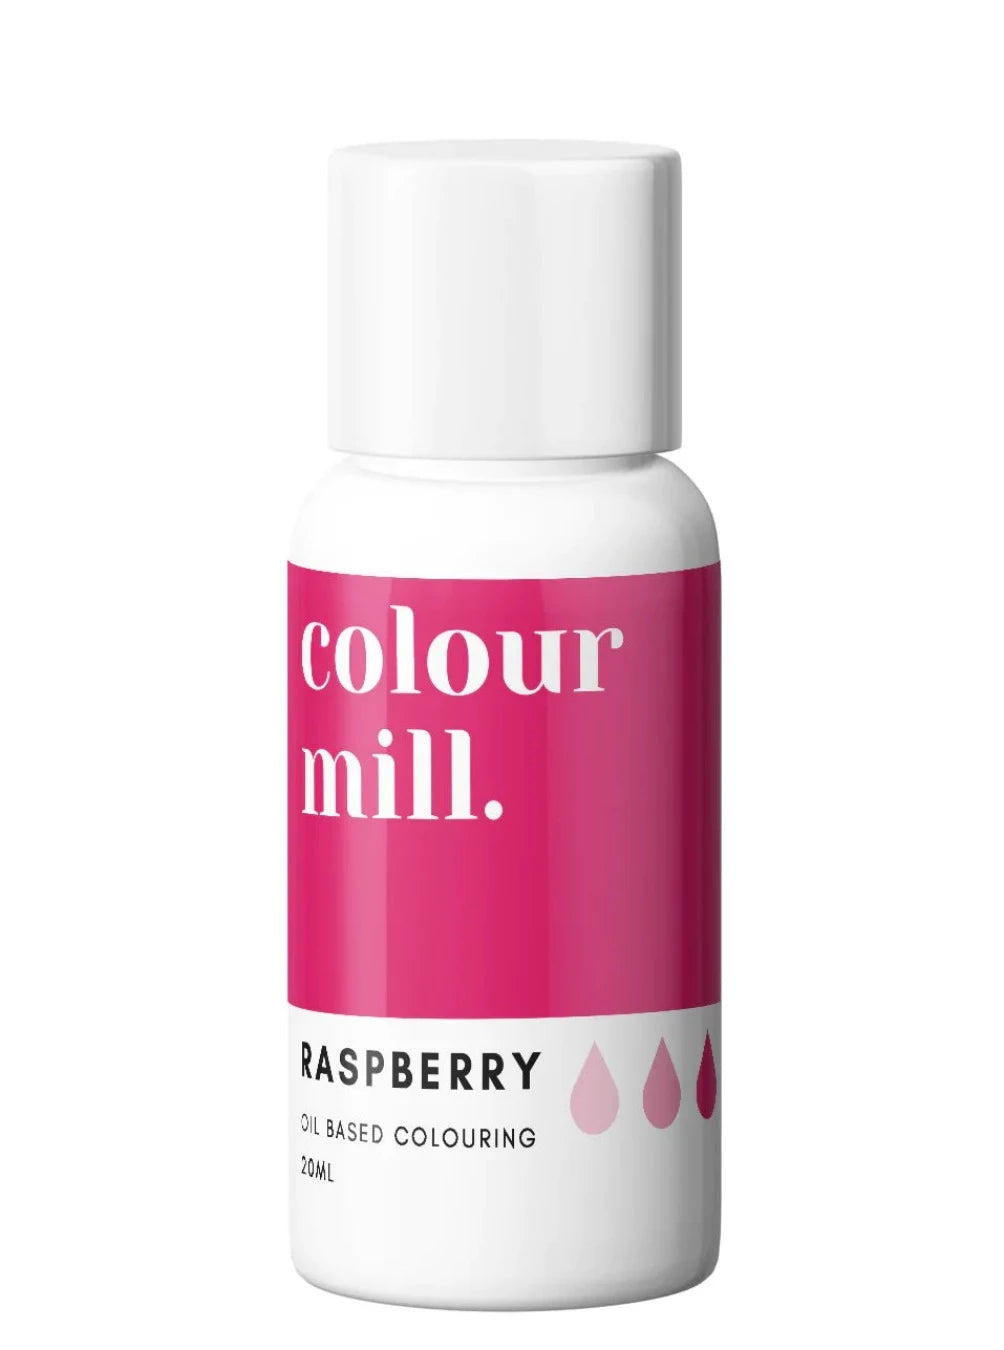 raspberry colour mill, colour mill raspberry, raspberry color oil based, colour mill raspberry. raspberry oil based colouring 